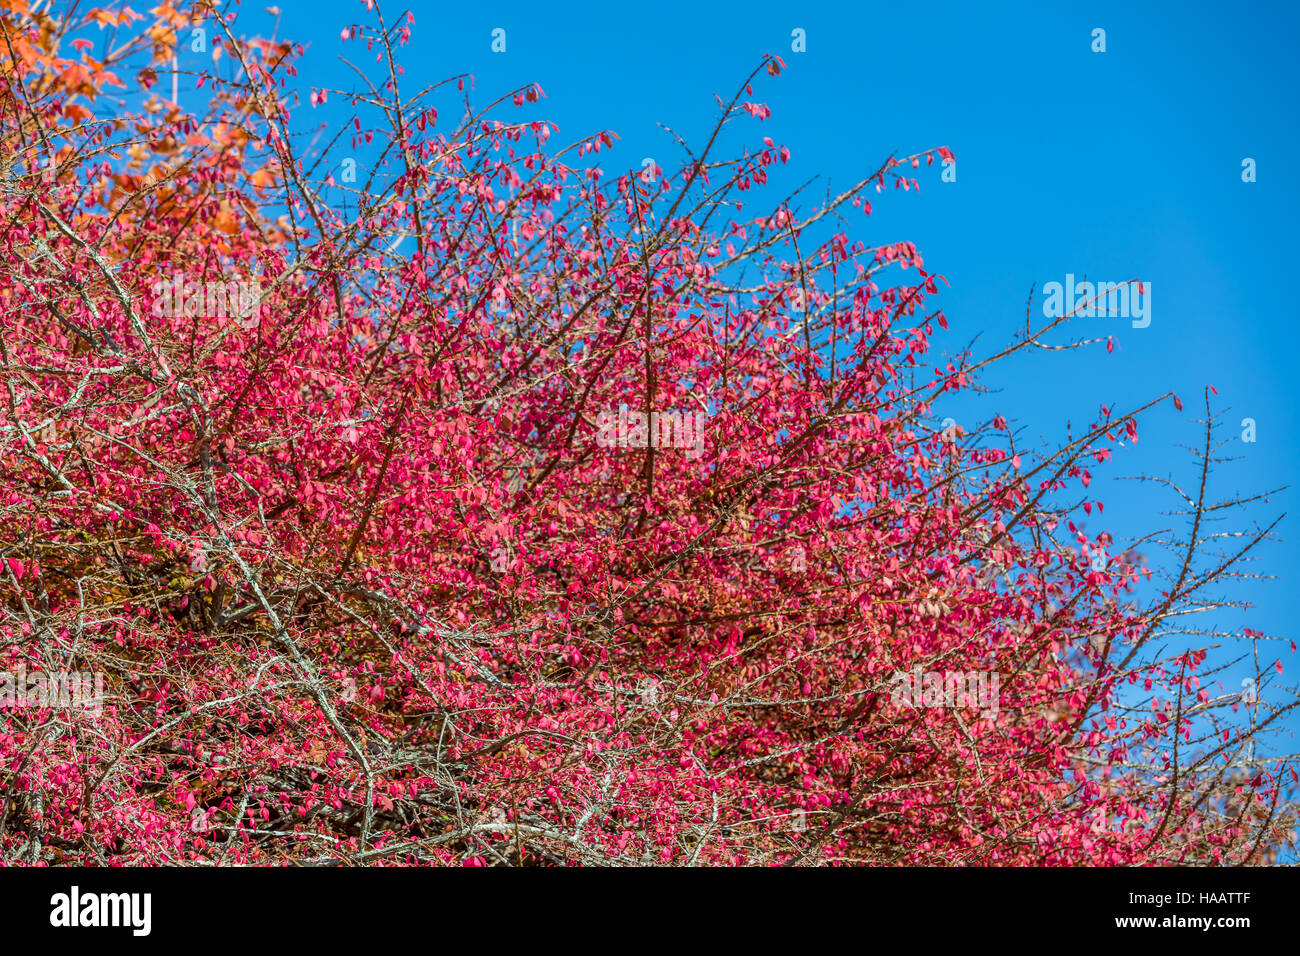 Detail von einem blühenden Baum mit roten Blüten und ein blauer Himmel Stockfoto